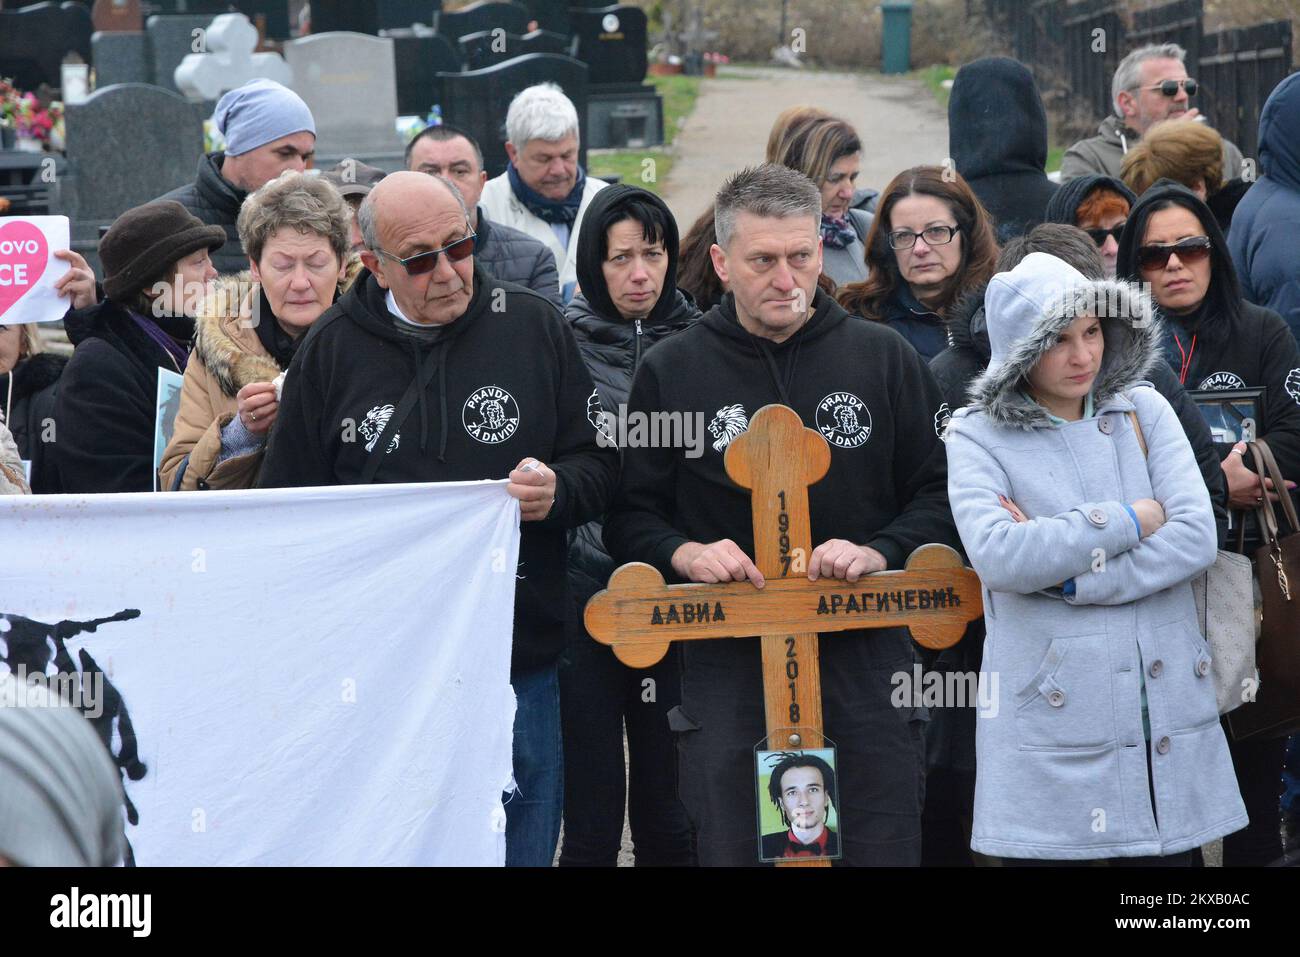 12.03.2019., Banja Luka, Bosnien und Herzegowina - die Überreste eines 21-jährigen bosnischen Studenten David Dragicevic, dessen ungelöster Tod monatelange Proteste gegen eine mutmaßliche Polizeivertuschung ausgelöst hat, wurden exhumiert, damit er in Österreich wieder beerdigt werden kann.Dutzende von Bosnier versammelten sich auf einem Friedhof, um sich von David zu verabschieden.David Dragicevic starb Letzten März in Banja Luka, was die Polizei zuerst als Selbstmord bezeichnete, aber die Familie bestand darauf, dass er ermordet wurde.David Dragicevics Mutter lebt in Österreich, so dass er dort begraben wird Foto: Ivica Galovic/PIXSELL Stockfoto